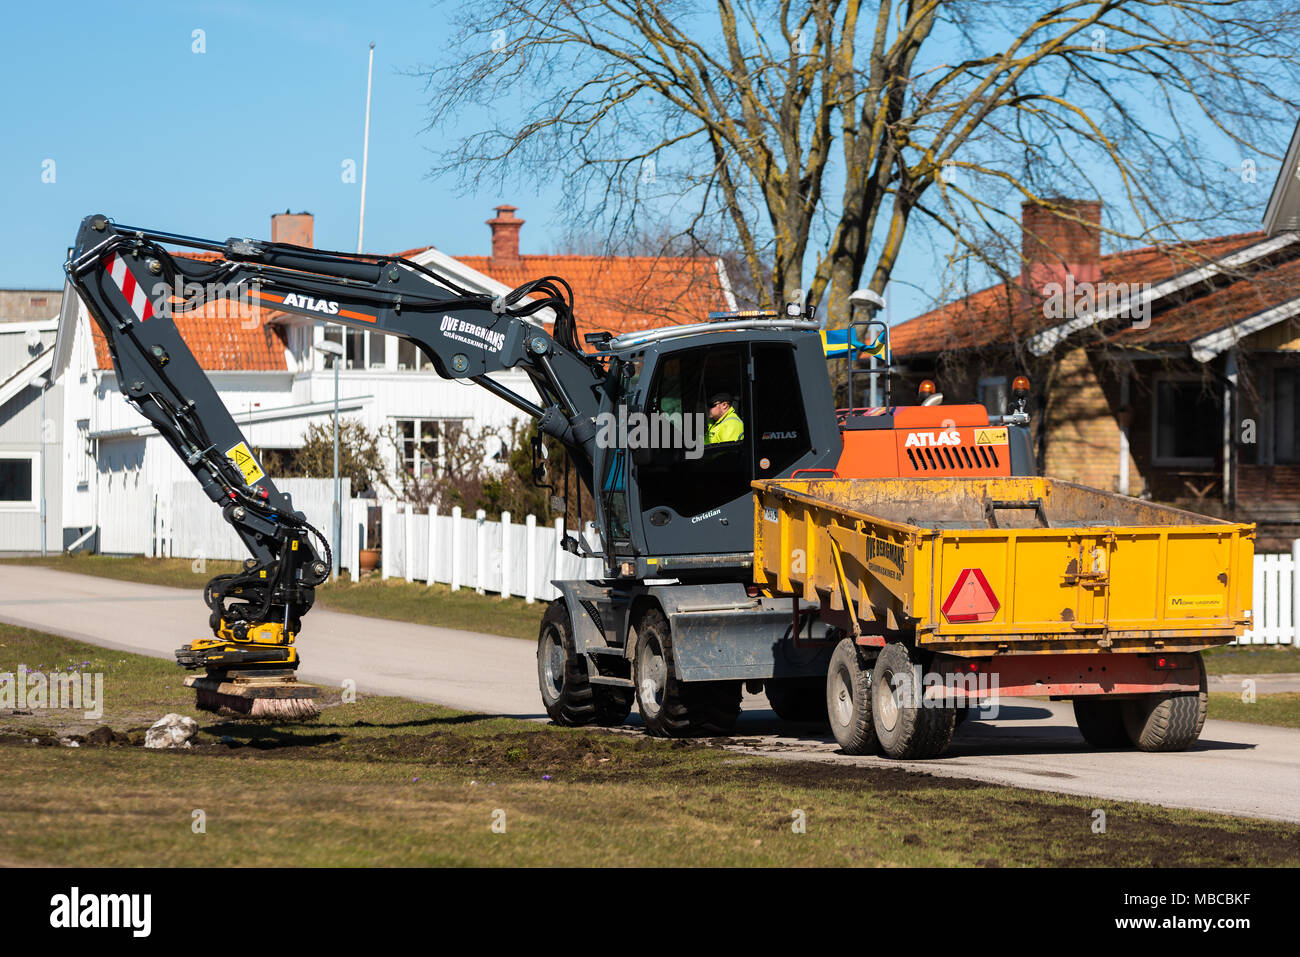 Morbylanga, Schweden - 6. April 2018: Dokumentarfilm von Alltag und Umwelt. Atlas Bagger mit Bürste Bürsten oder Vibrierenden th ausgestattet Stockfoto